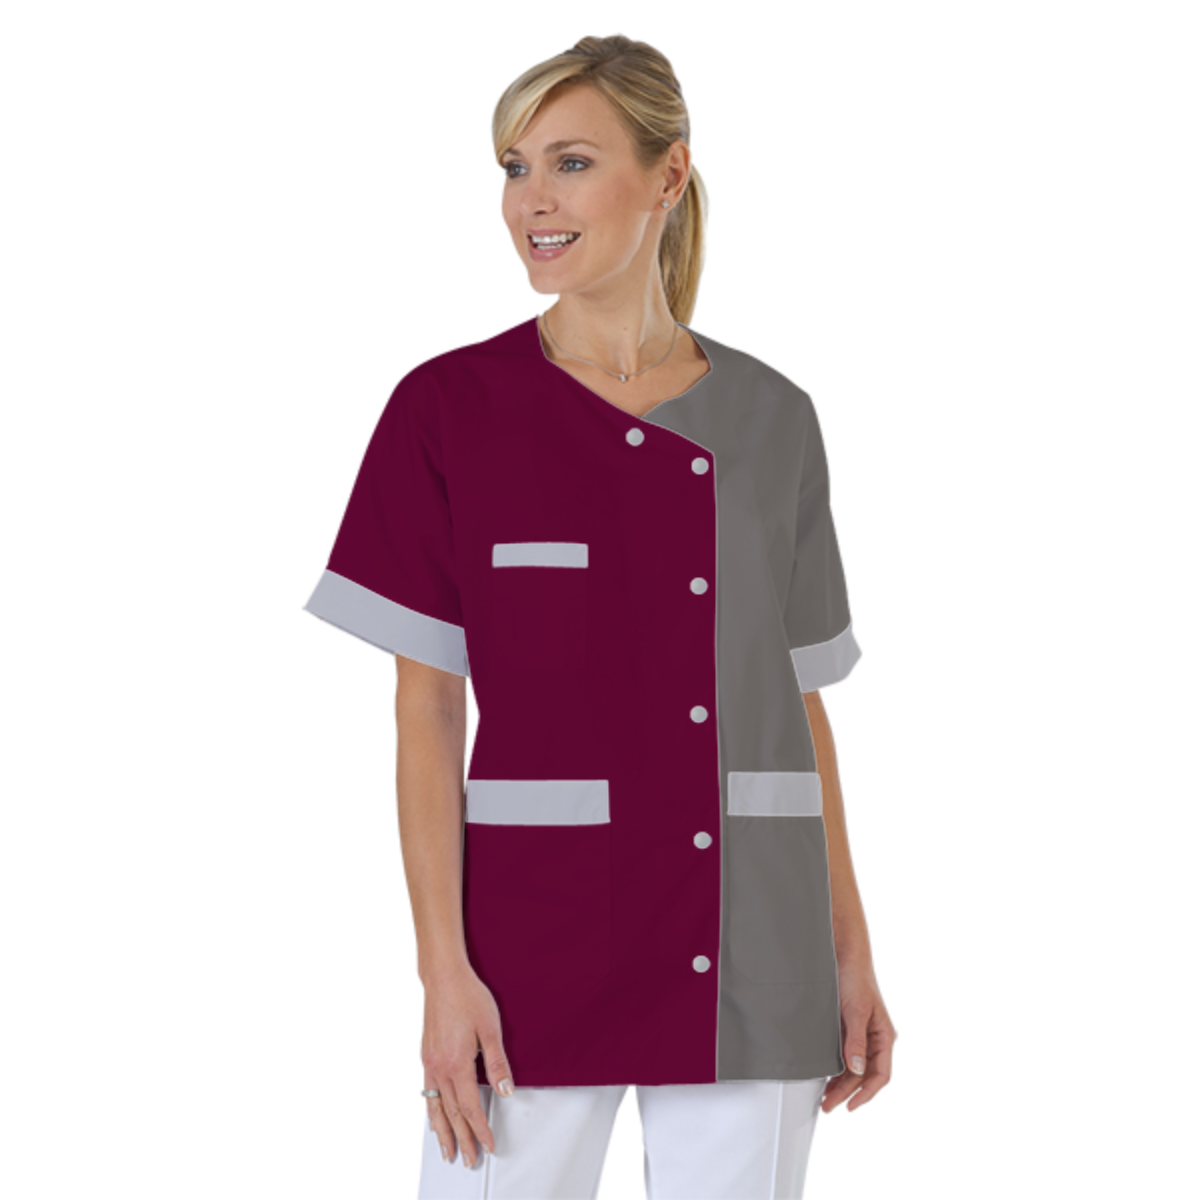 blouse-infirmiere-personnalise-col-trapeze acheté - par Cindy - le 23-05-2019